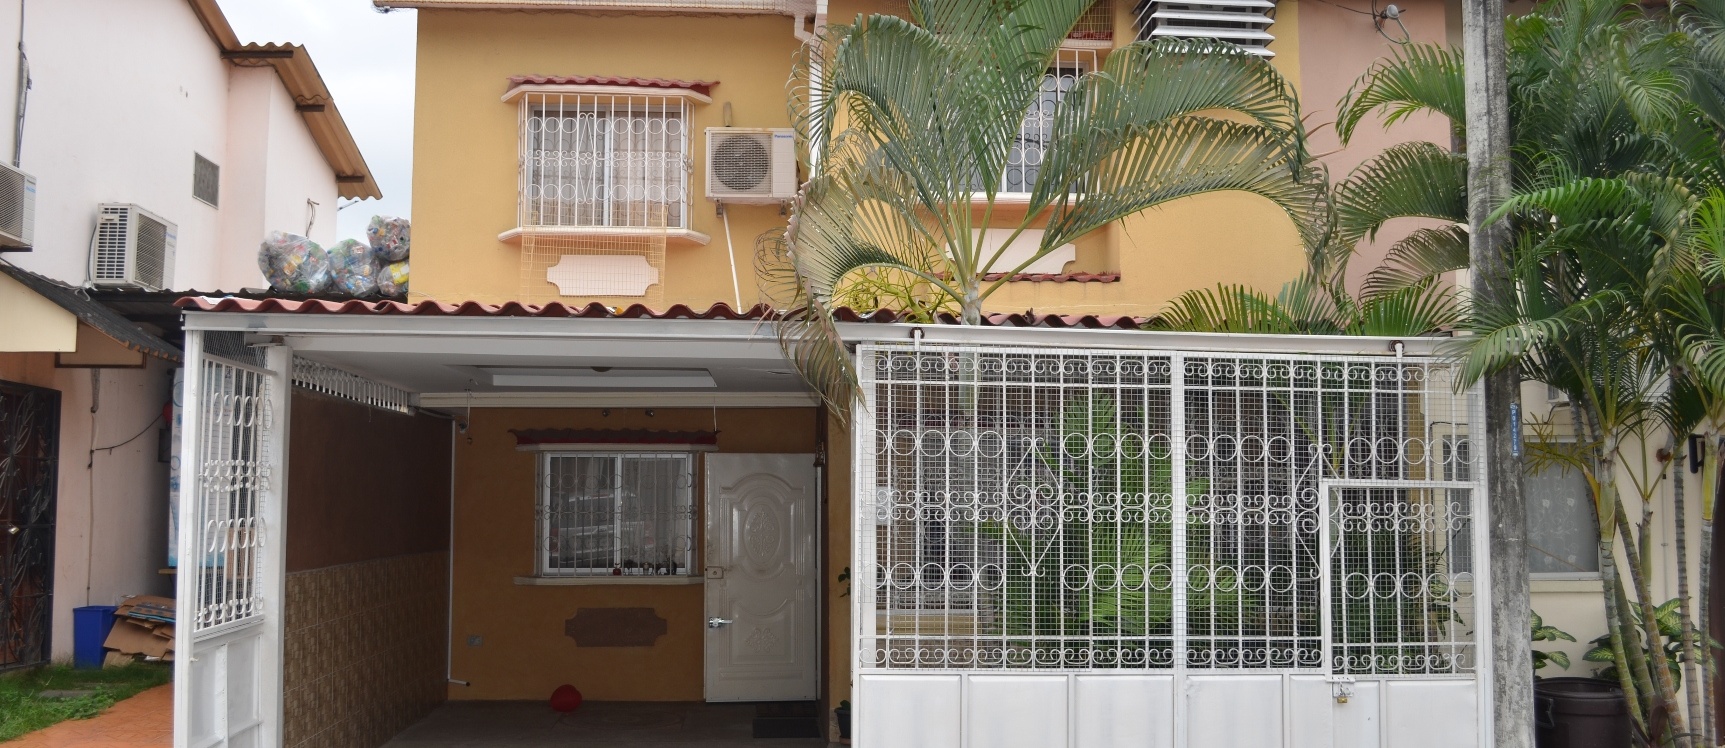 GeoBienes - Casa en venta en urbanización Colinas del Sol sector vía Daule - Plusvalia Guayaquil Casas de venta y alquiler Inmobiliaria Ecuador